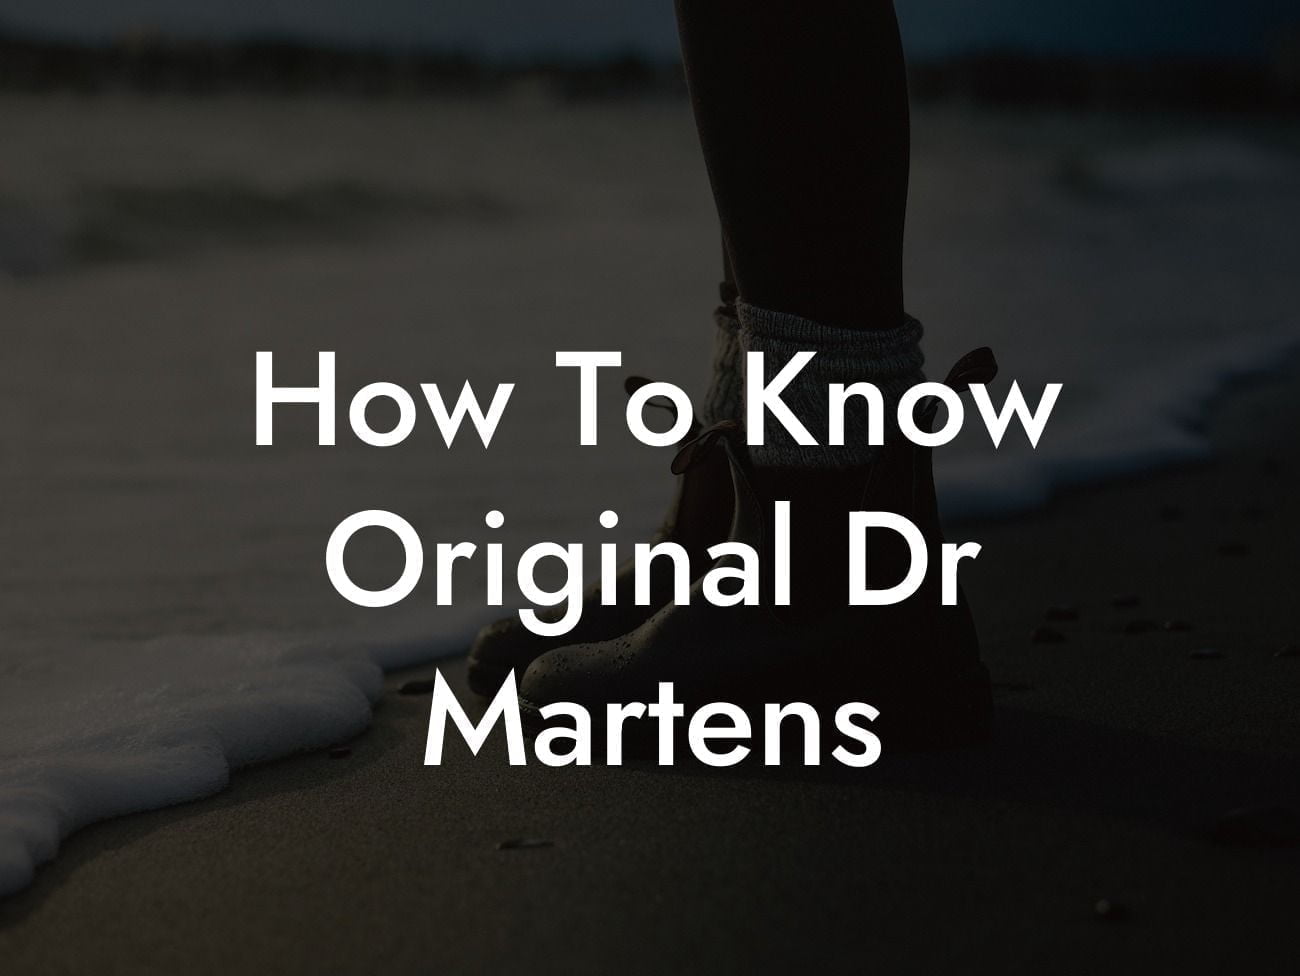 How To Know Original Dr Martens